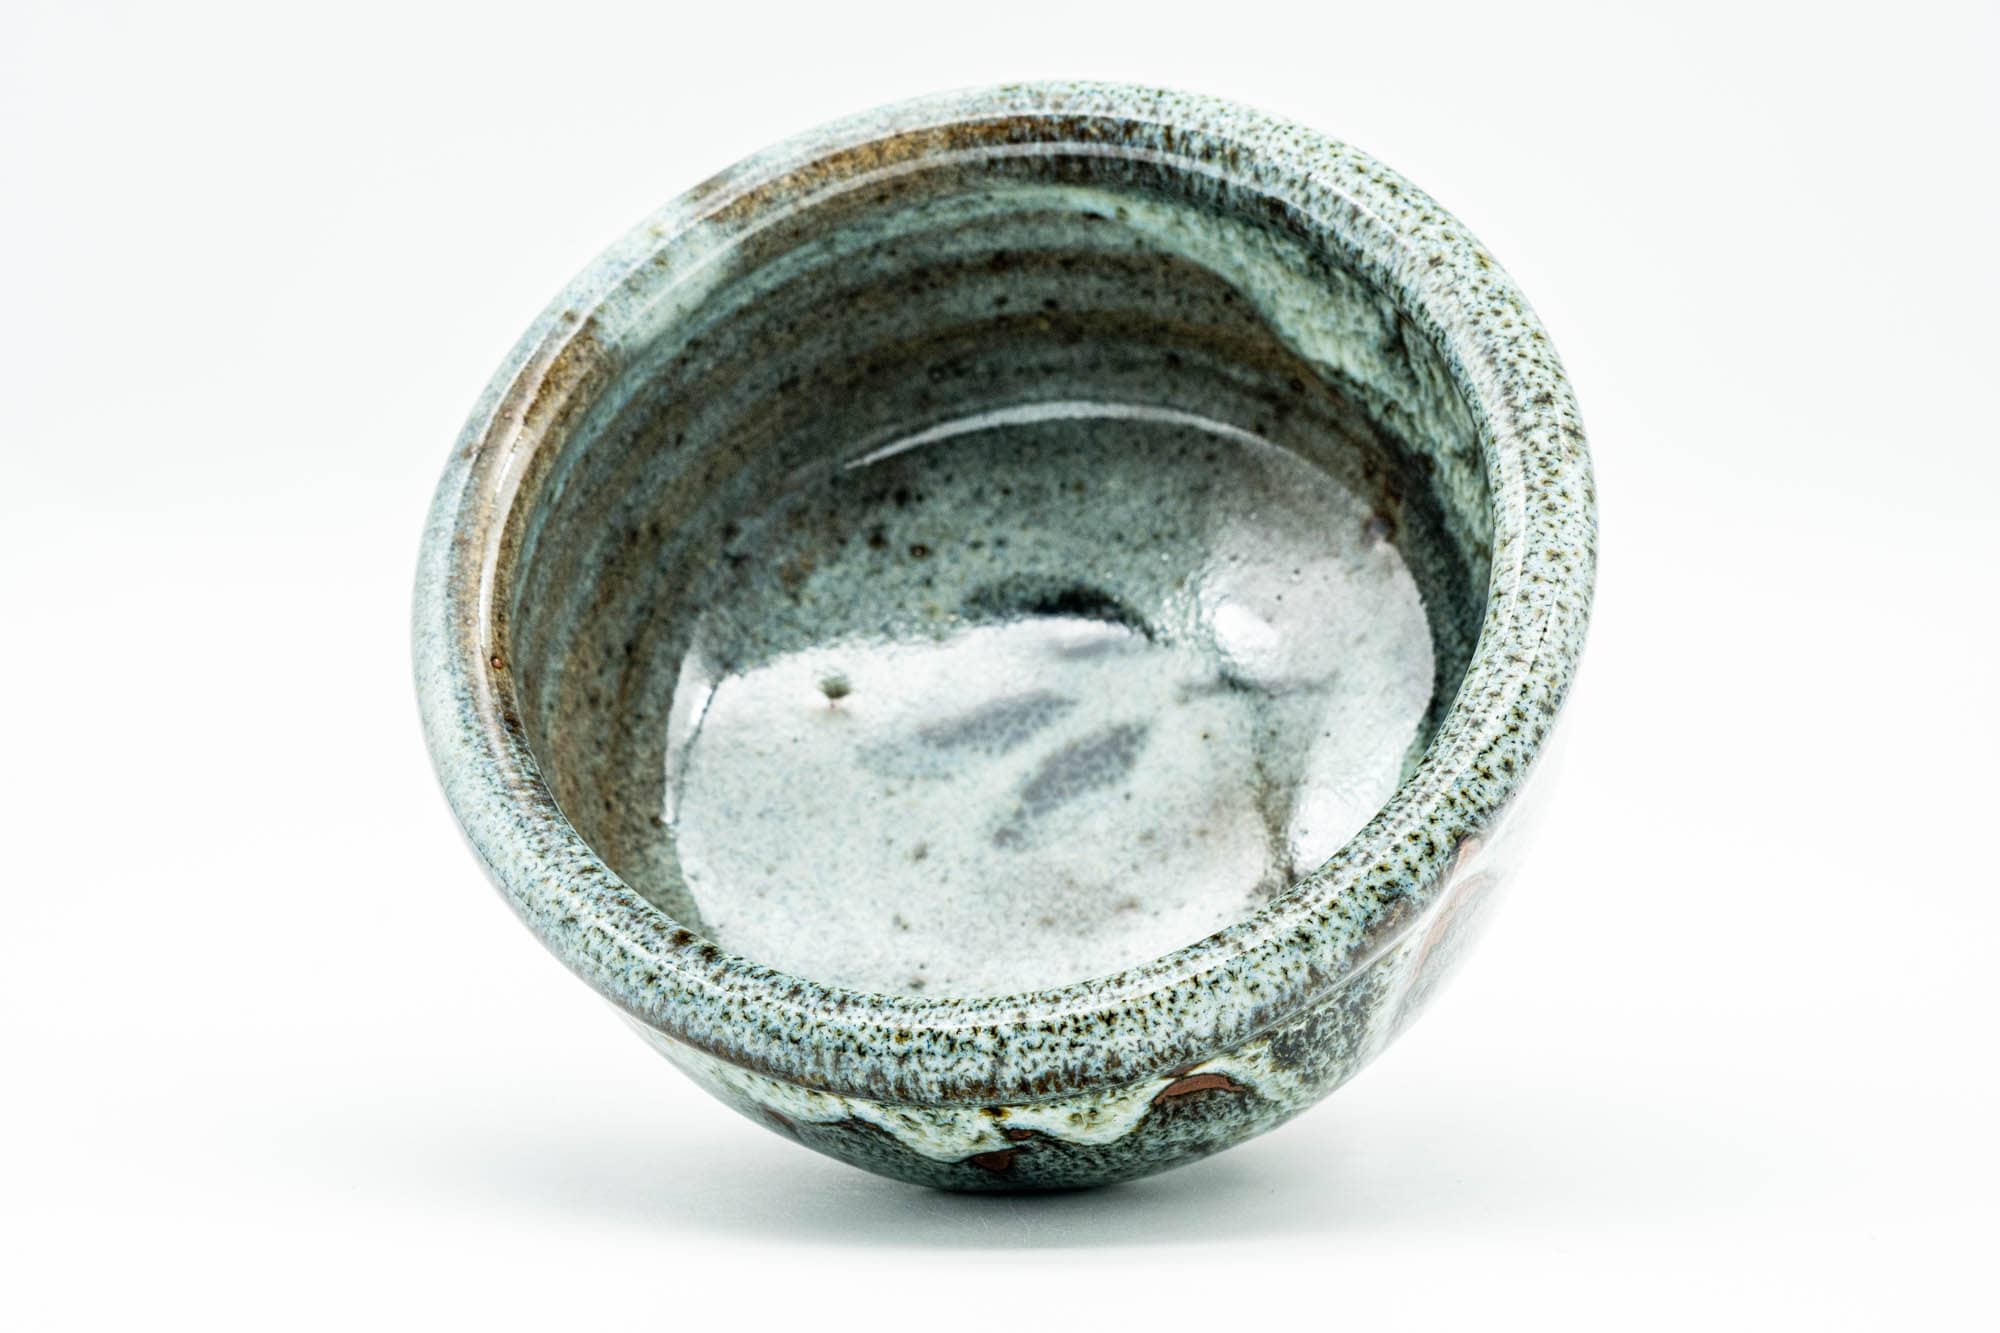 Japanese Matcha Bowl - Small Blue White Drip-Glazed Chawan - 150ml